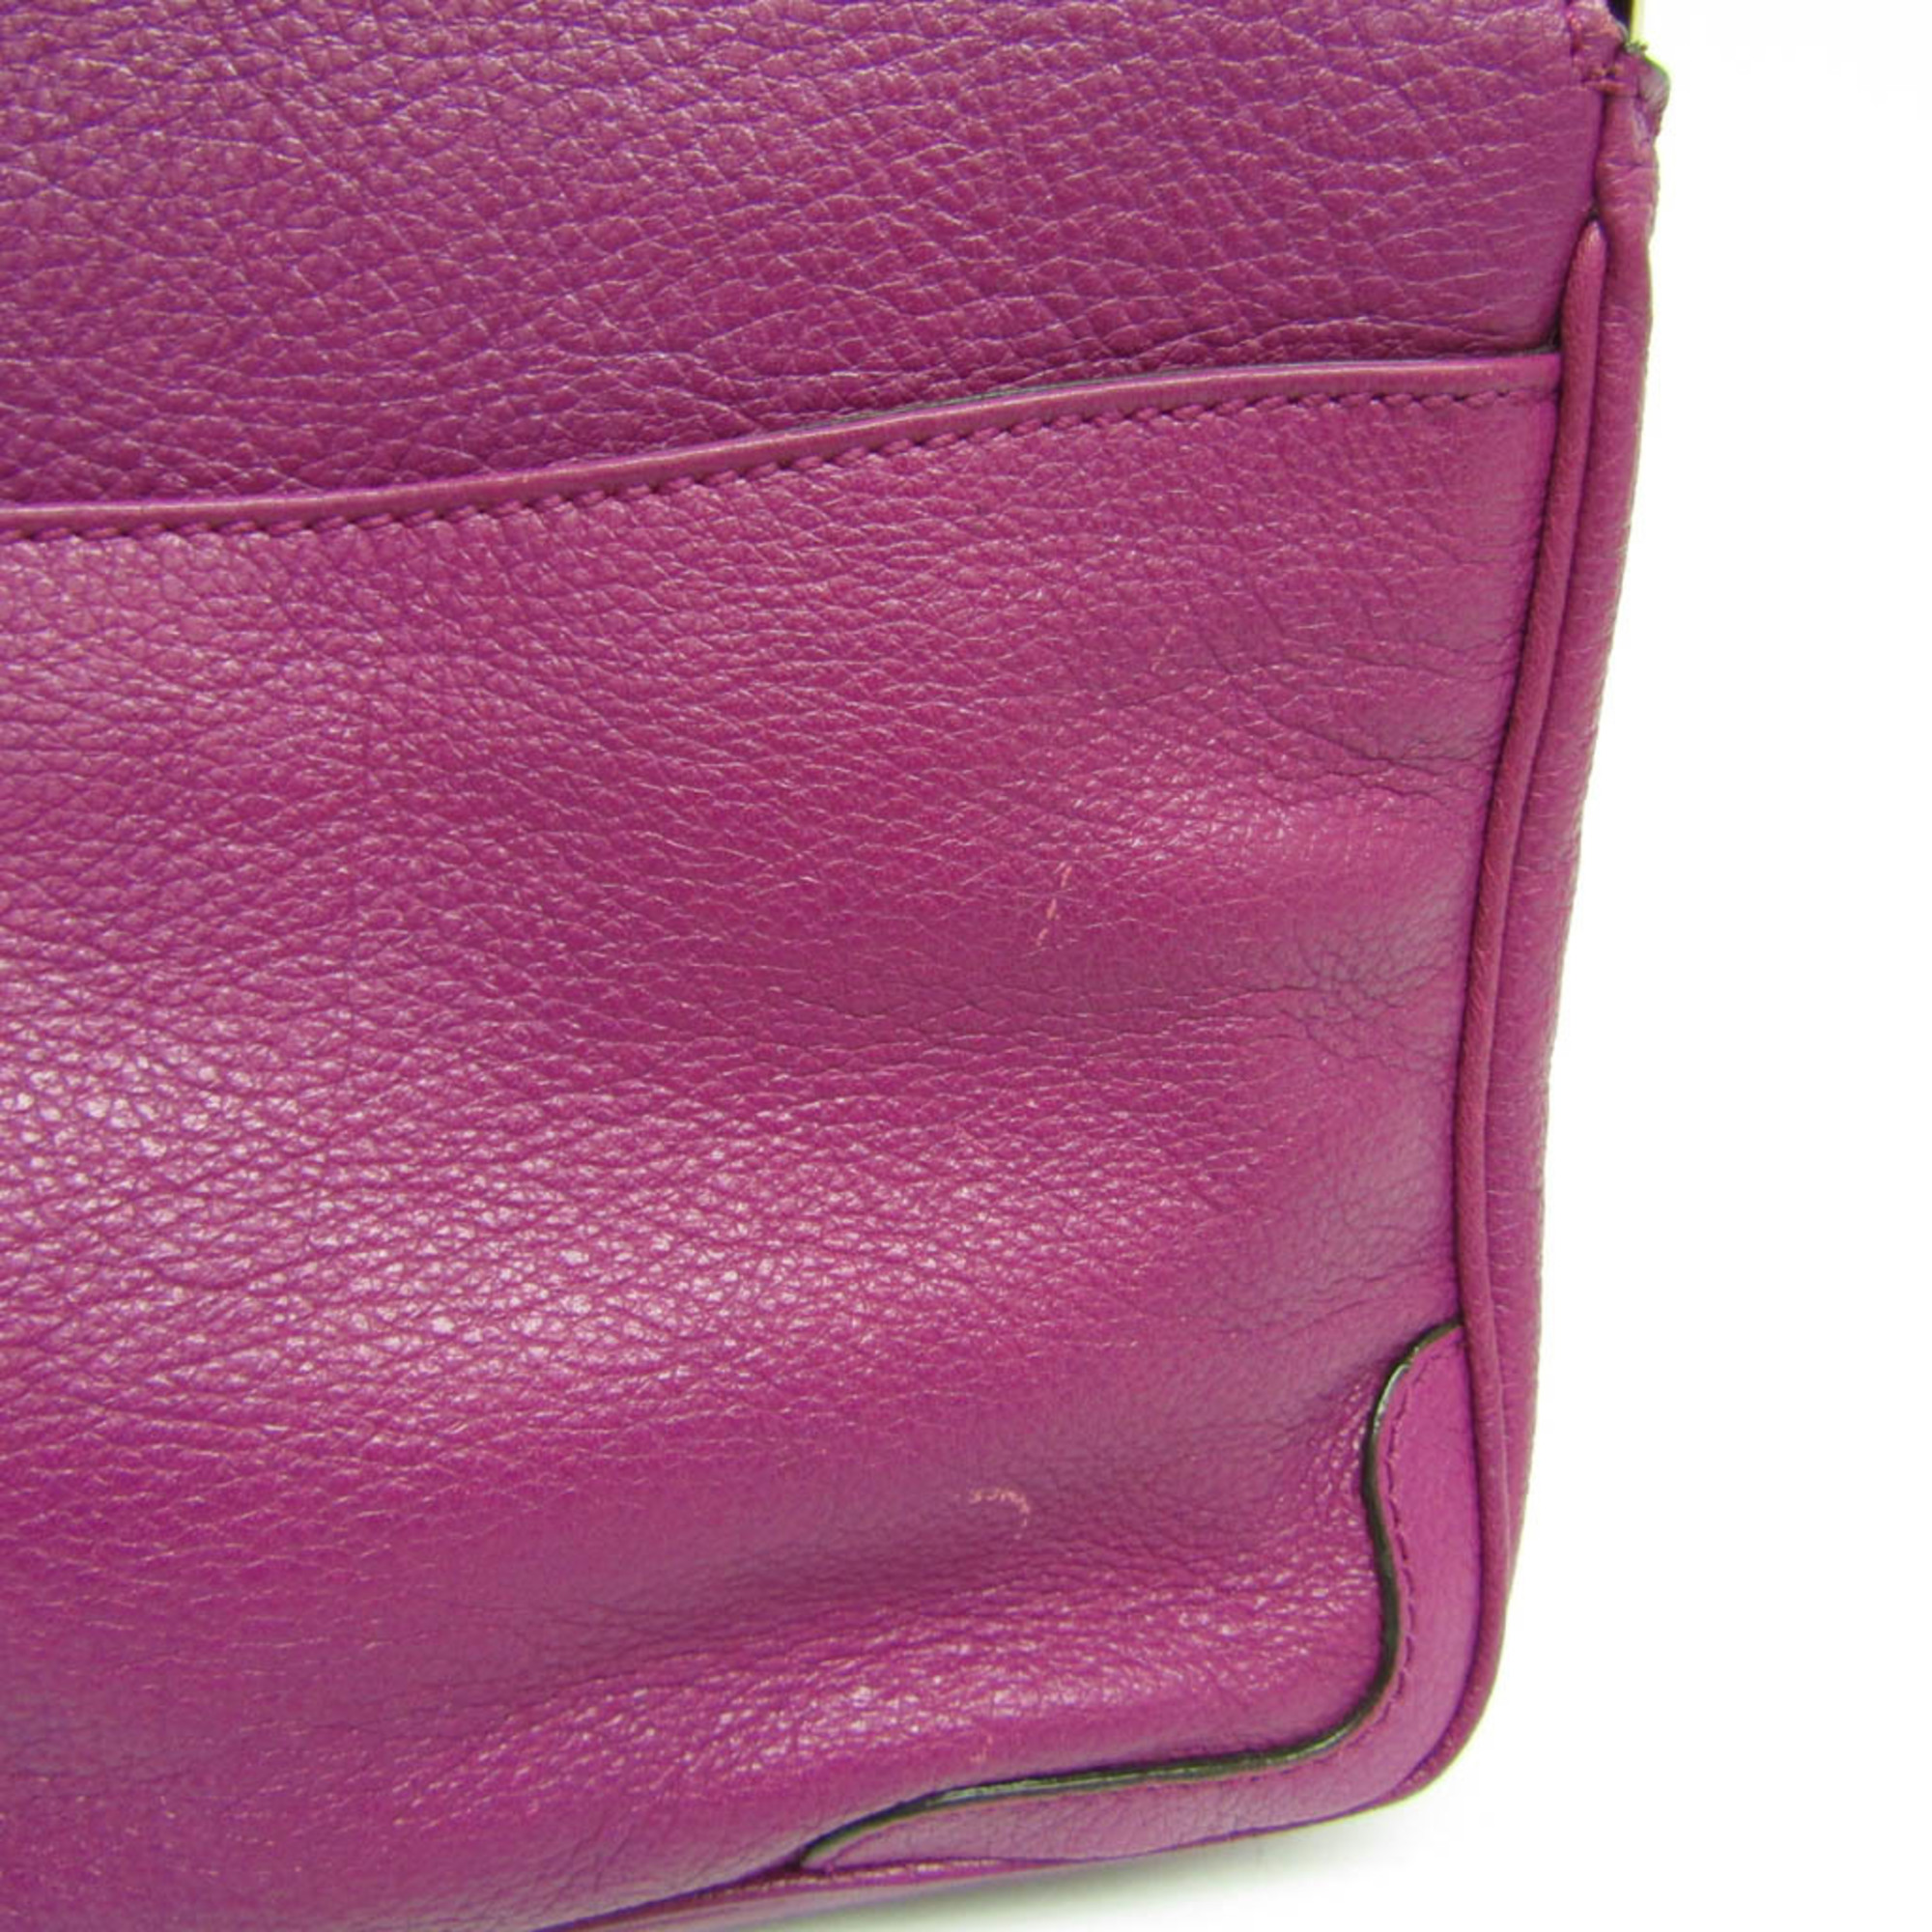 Salvatore Ferragamo DH-21 B923 Women's Leather Shoulder Bag Purple